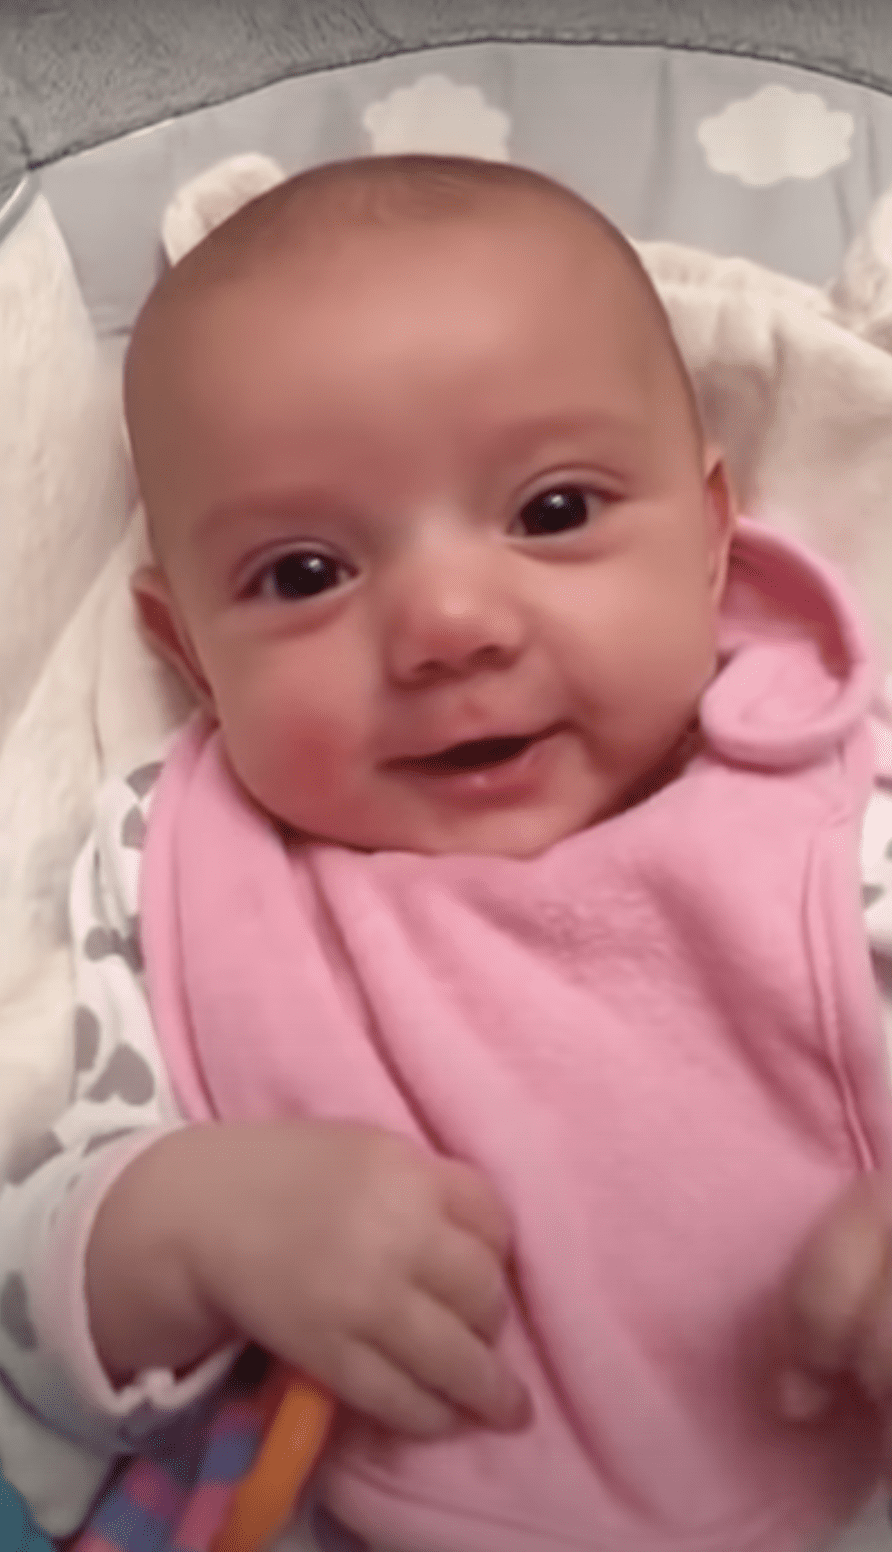 El bebé le devuelve la sonrisa a su mamá. | Foto: YouTube.com/Rumble Viral